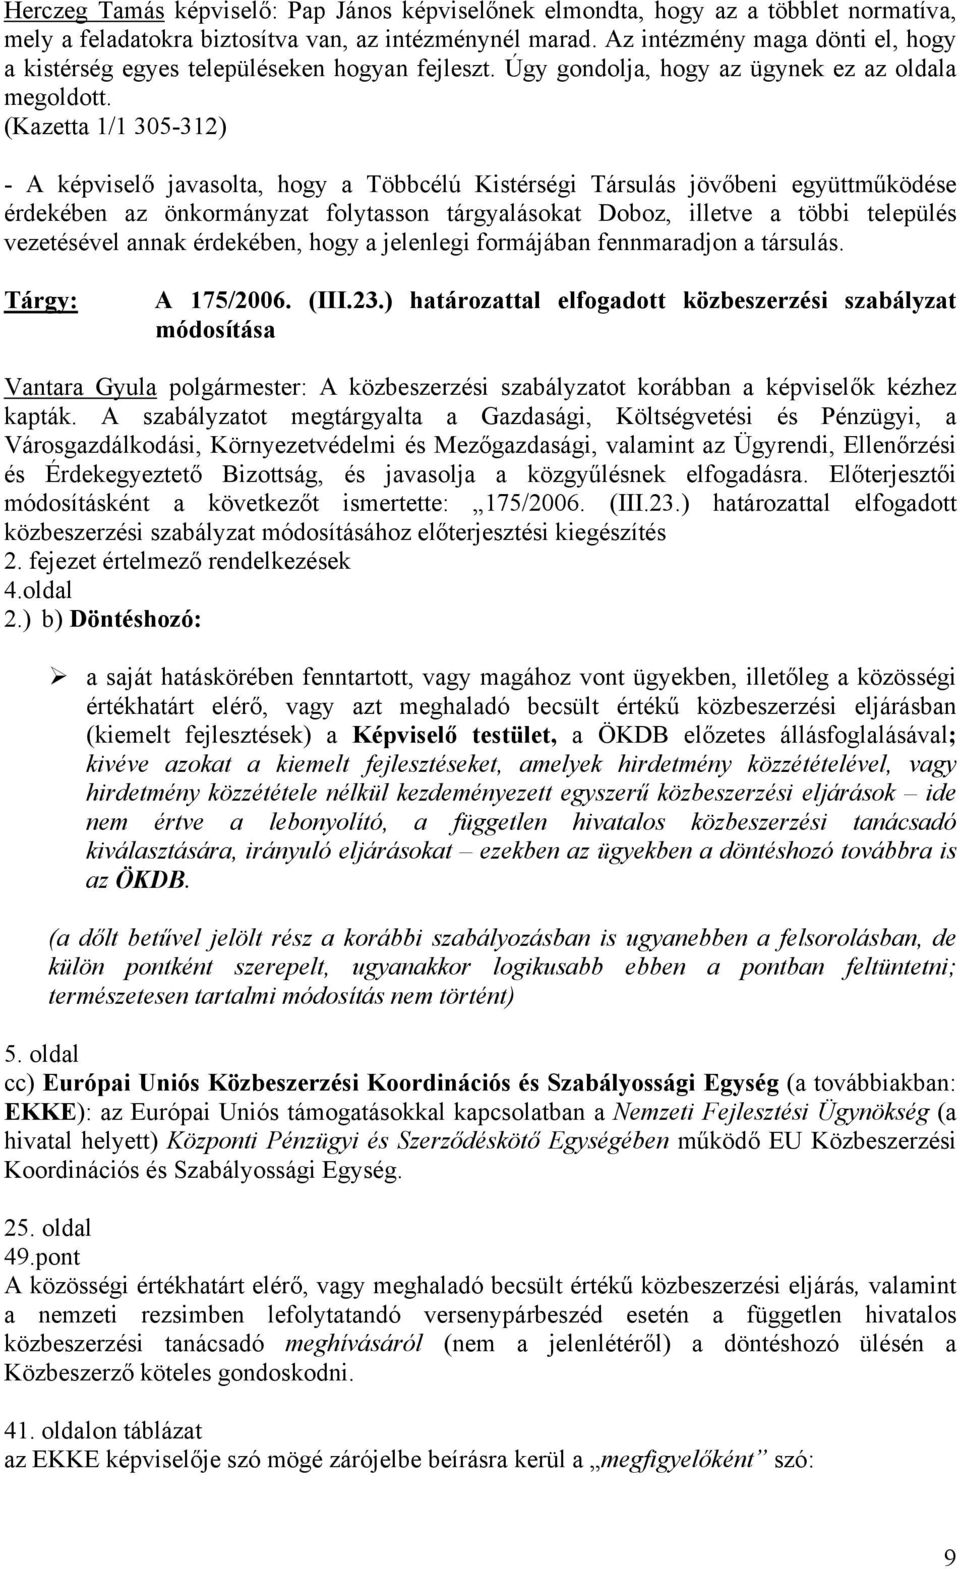 (Kazetta 1/1 305-312) - A képviselő javasolta, hogy a Többcélú Kistérségi Társulás jövőbeni együttműködése érdekében az önkormányzat folytasson tárgyalásokat Doboz, illetve a többi település